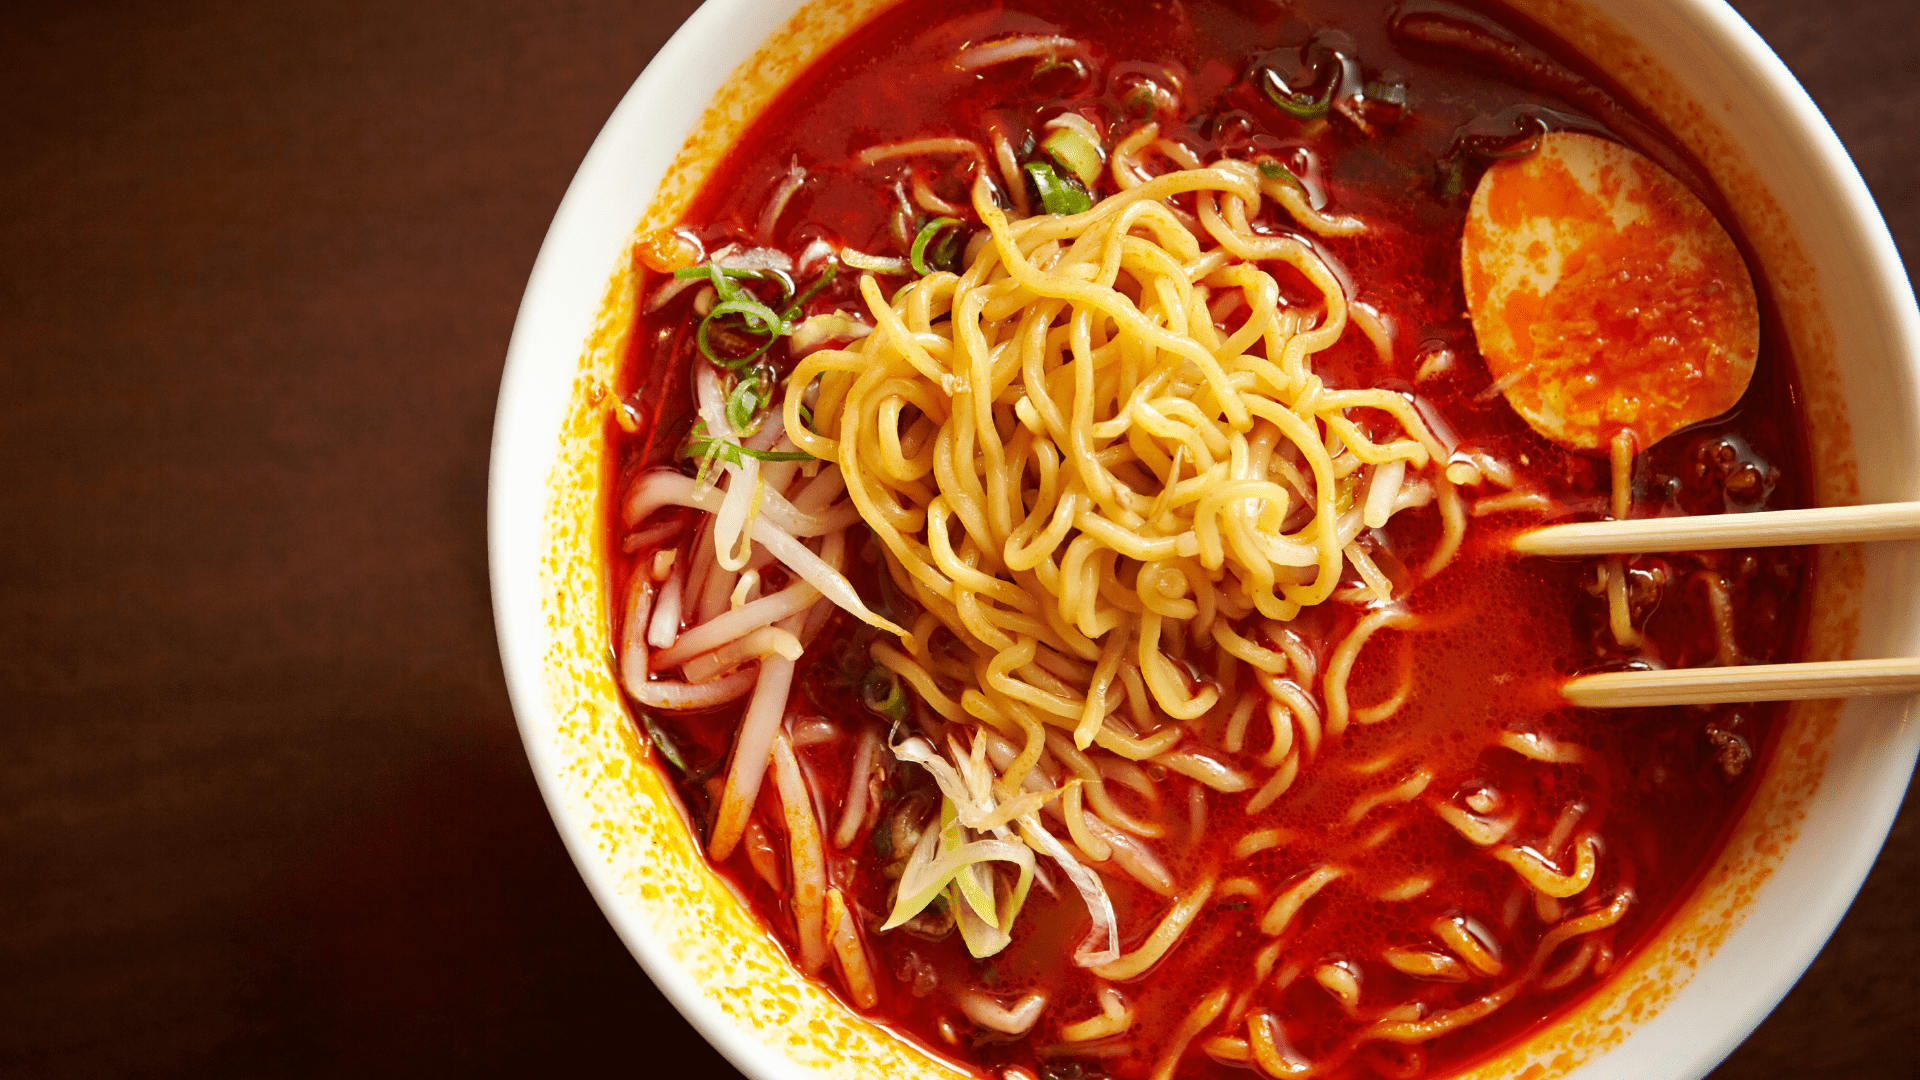 Tan tan ramen recipe | Delicious noodles with a spicy kick